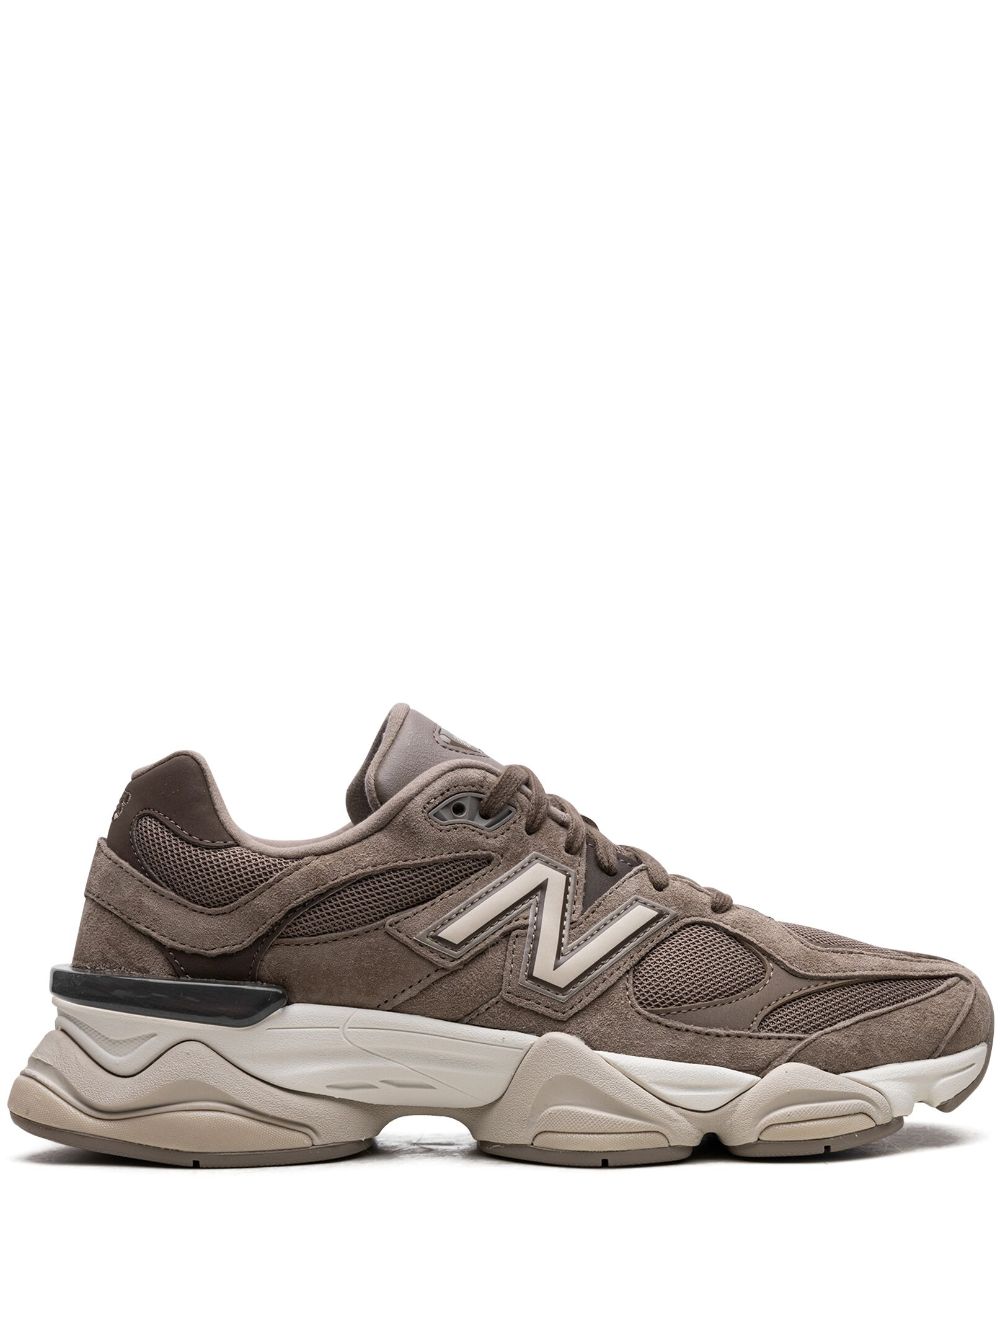 New Balance 9060 "Mushroom/Brown" sneakers - Bruin